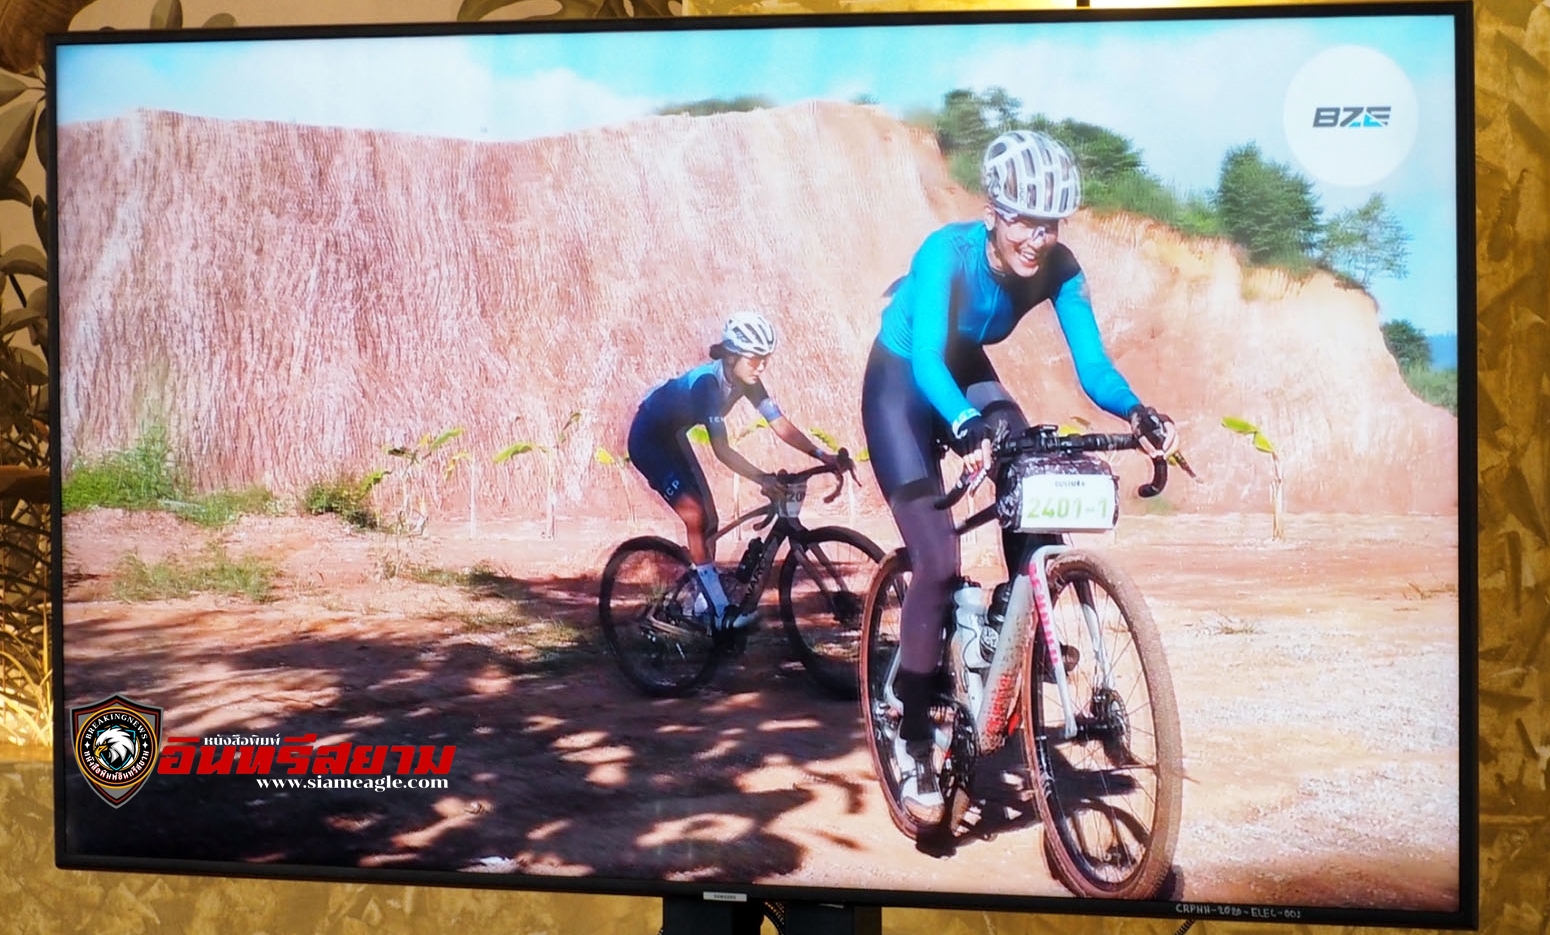 ประจวบคีรีขันธ์-“ไบค์โซน”จัดต่อเนื่องการแข่งจักรยานทางไกล“ดัสแมน หัวหิน”ส่งเสริมการท่องเที่ยวเชิงกีฬา